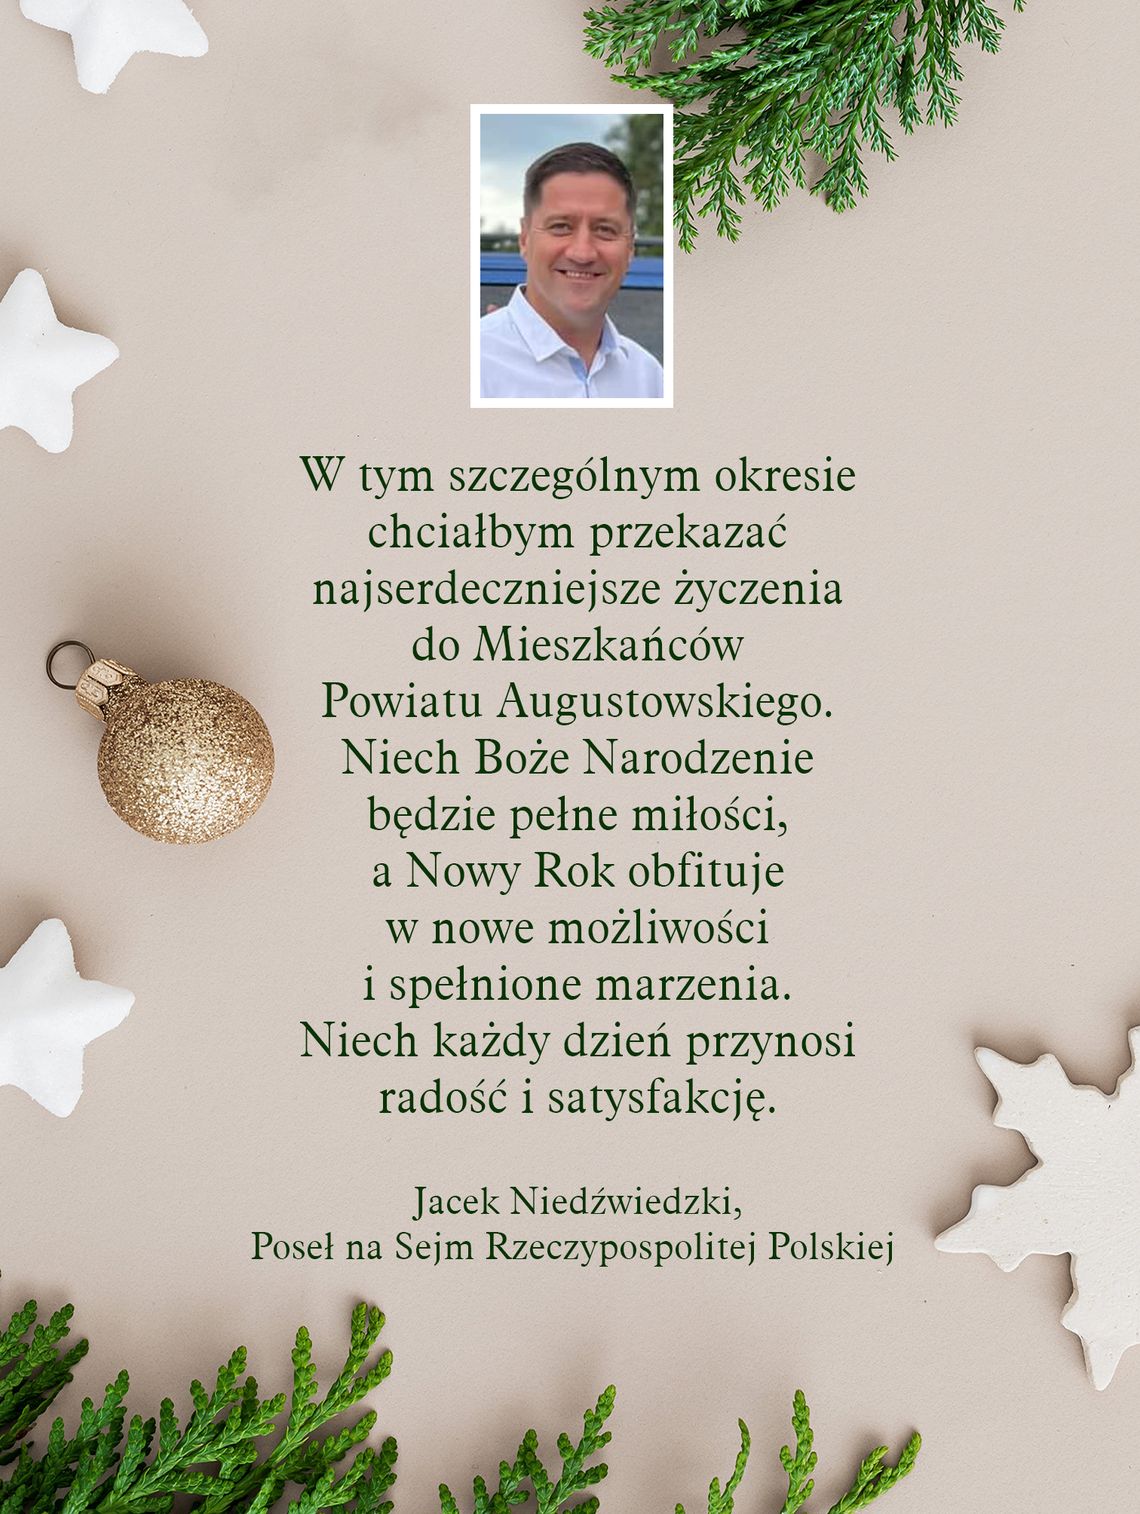 Życzenia od Jacka Niedźwiedzkiego, posła na Sejm RP